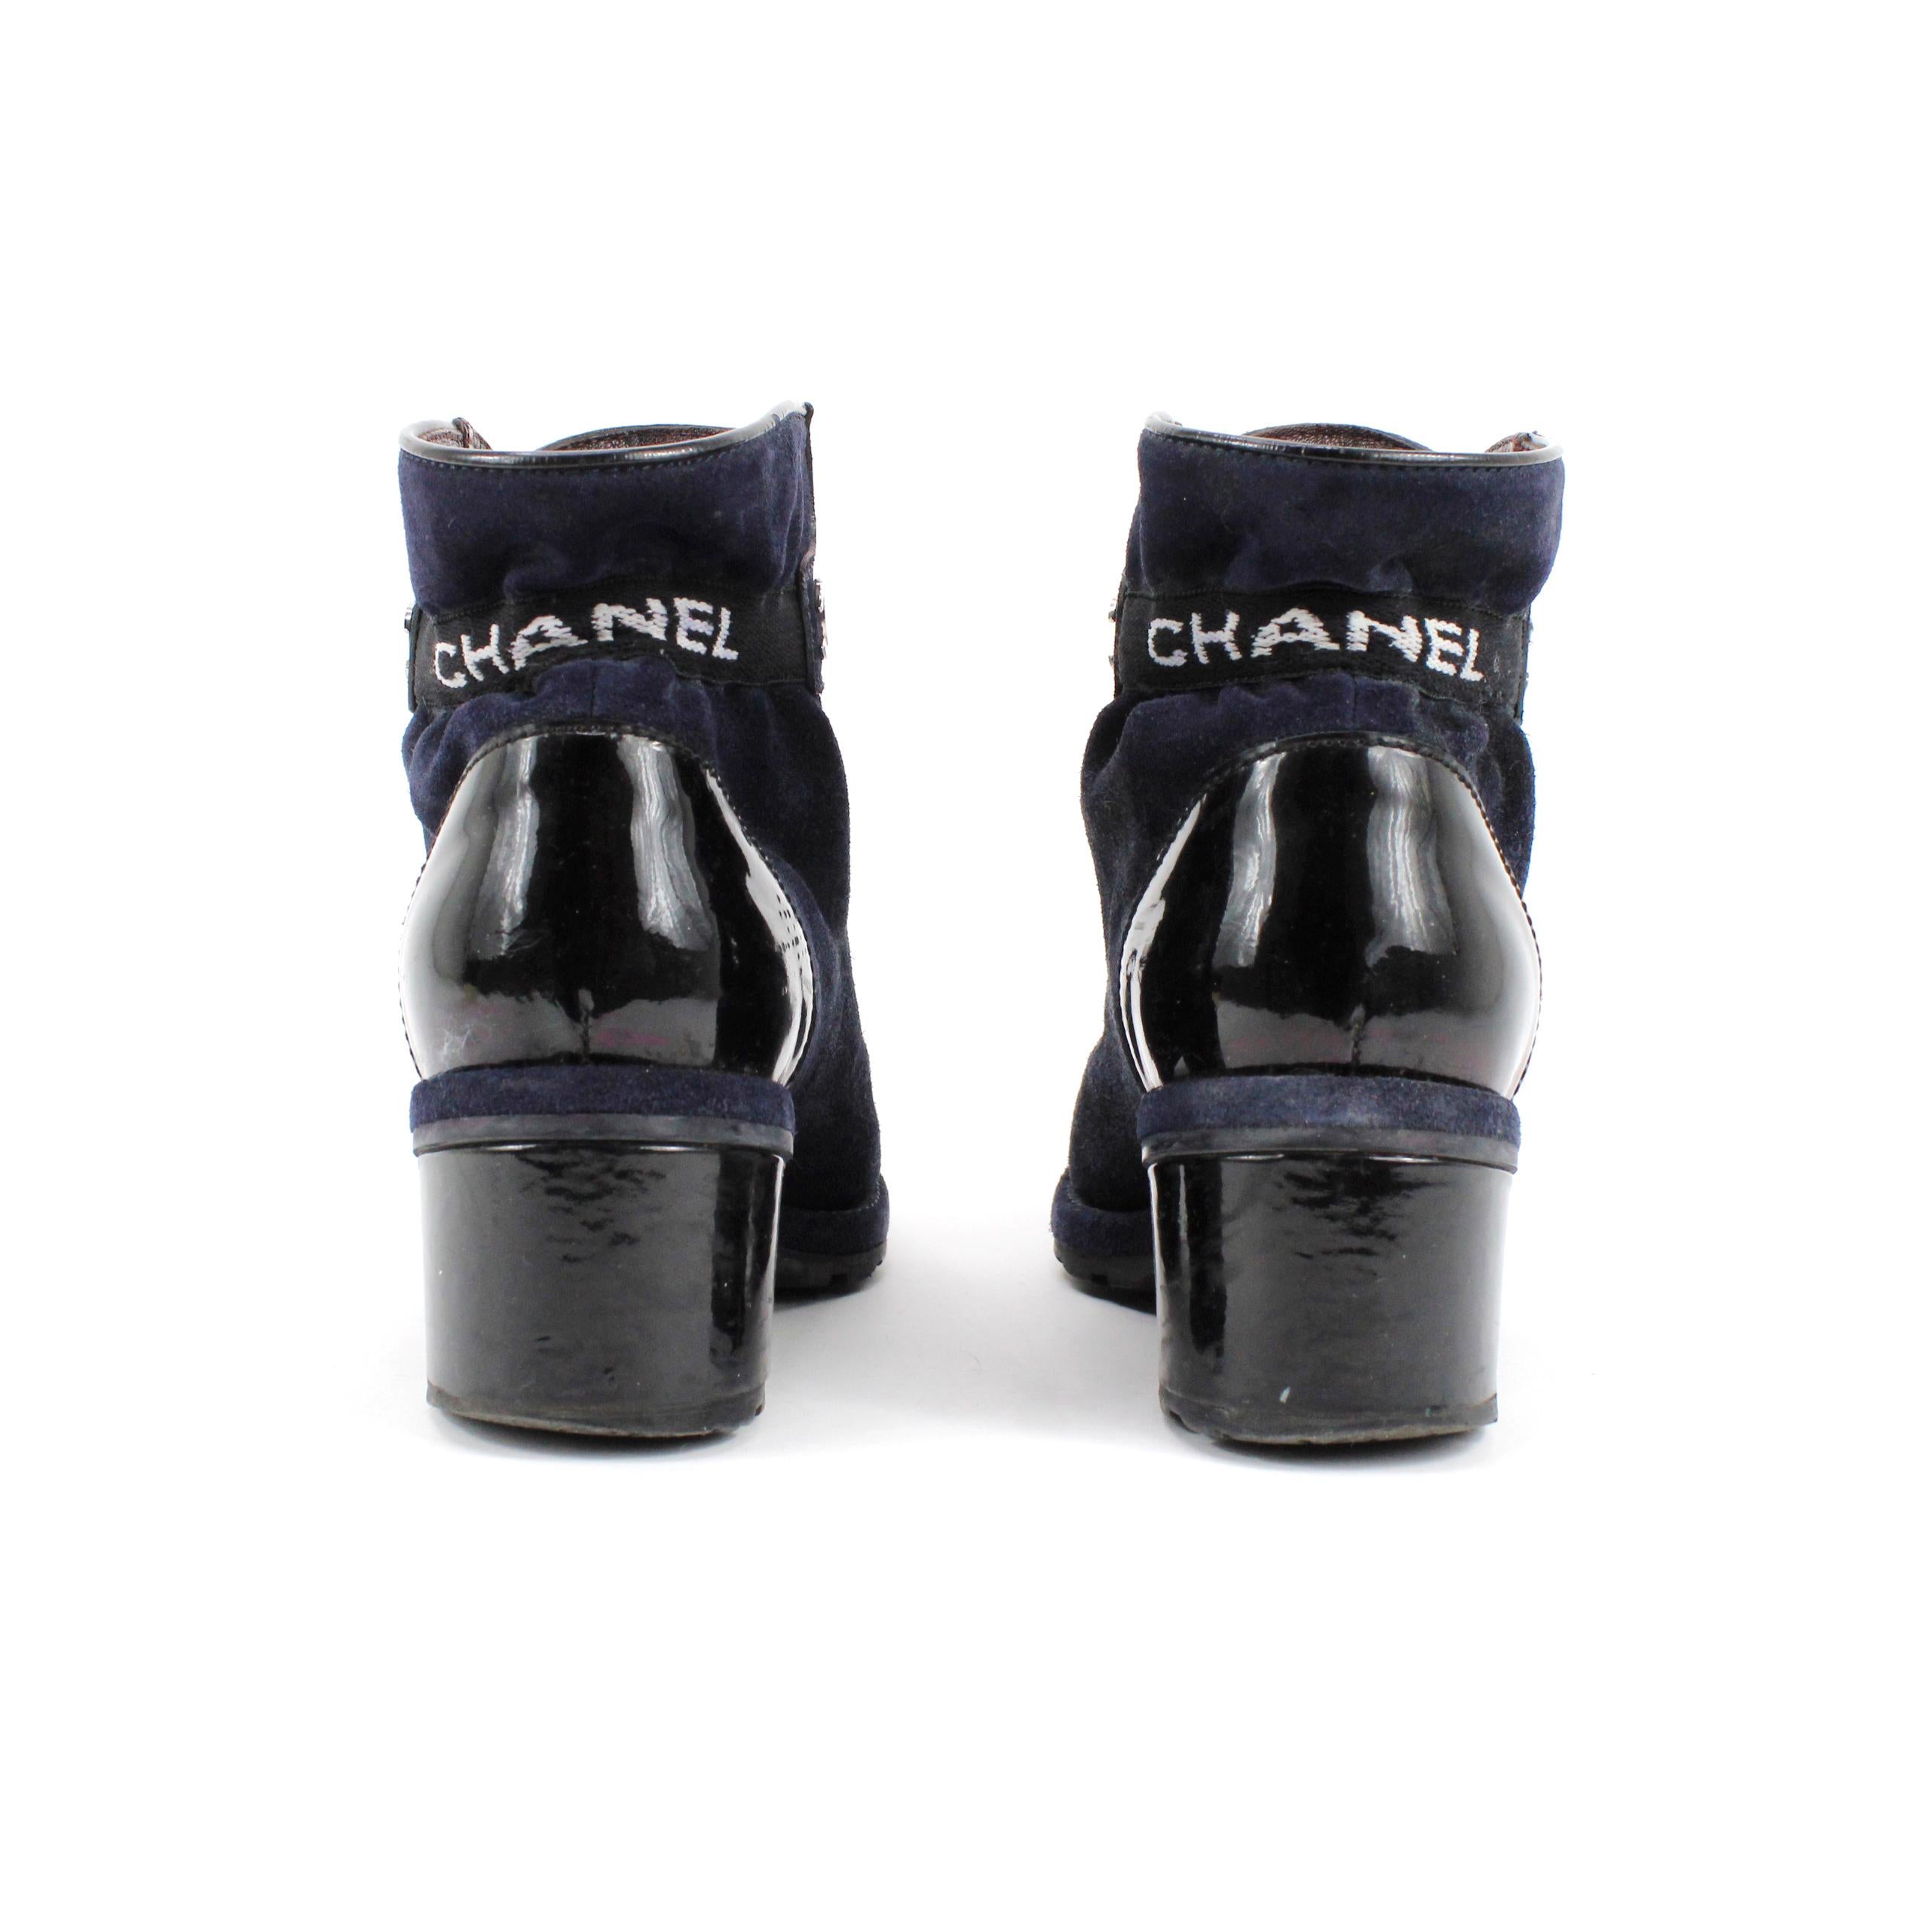 Bottes Chanel en cuir suédé + cuir verni, coloris bleu et noir. Taille 37,5 EU.

Condit : 
Très bon, légères rayures sur le cuir verni.